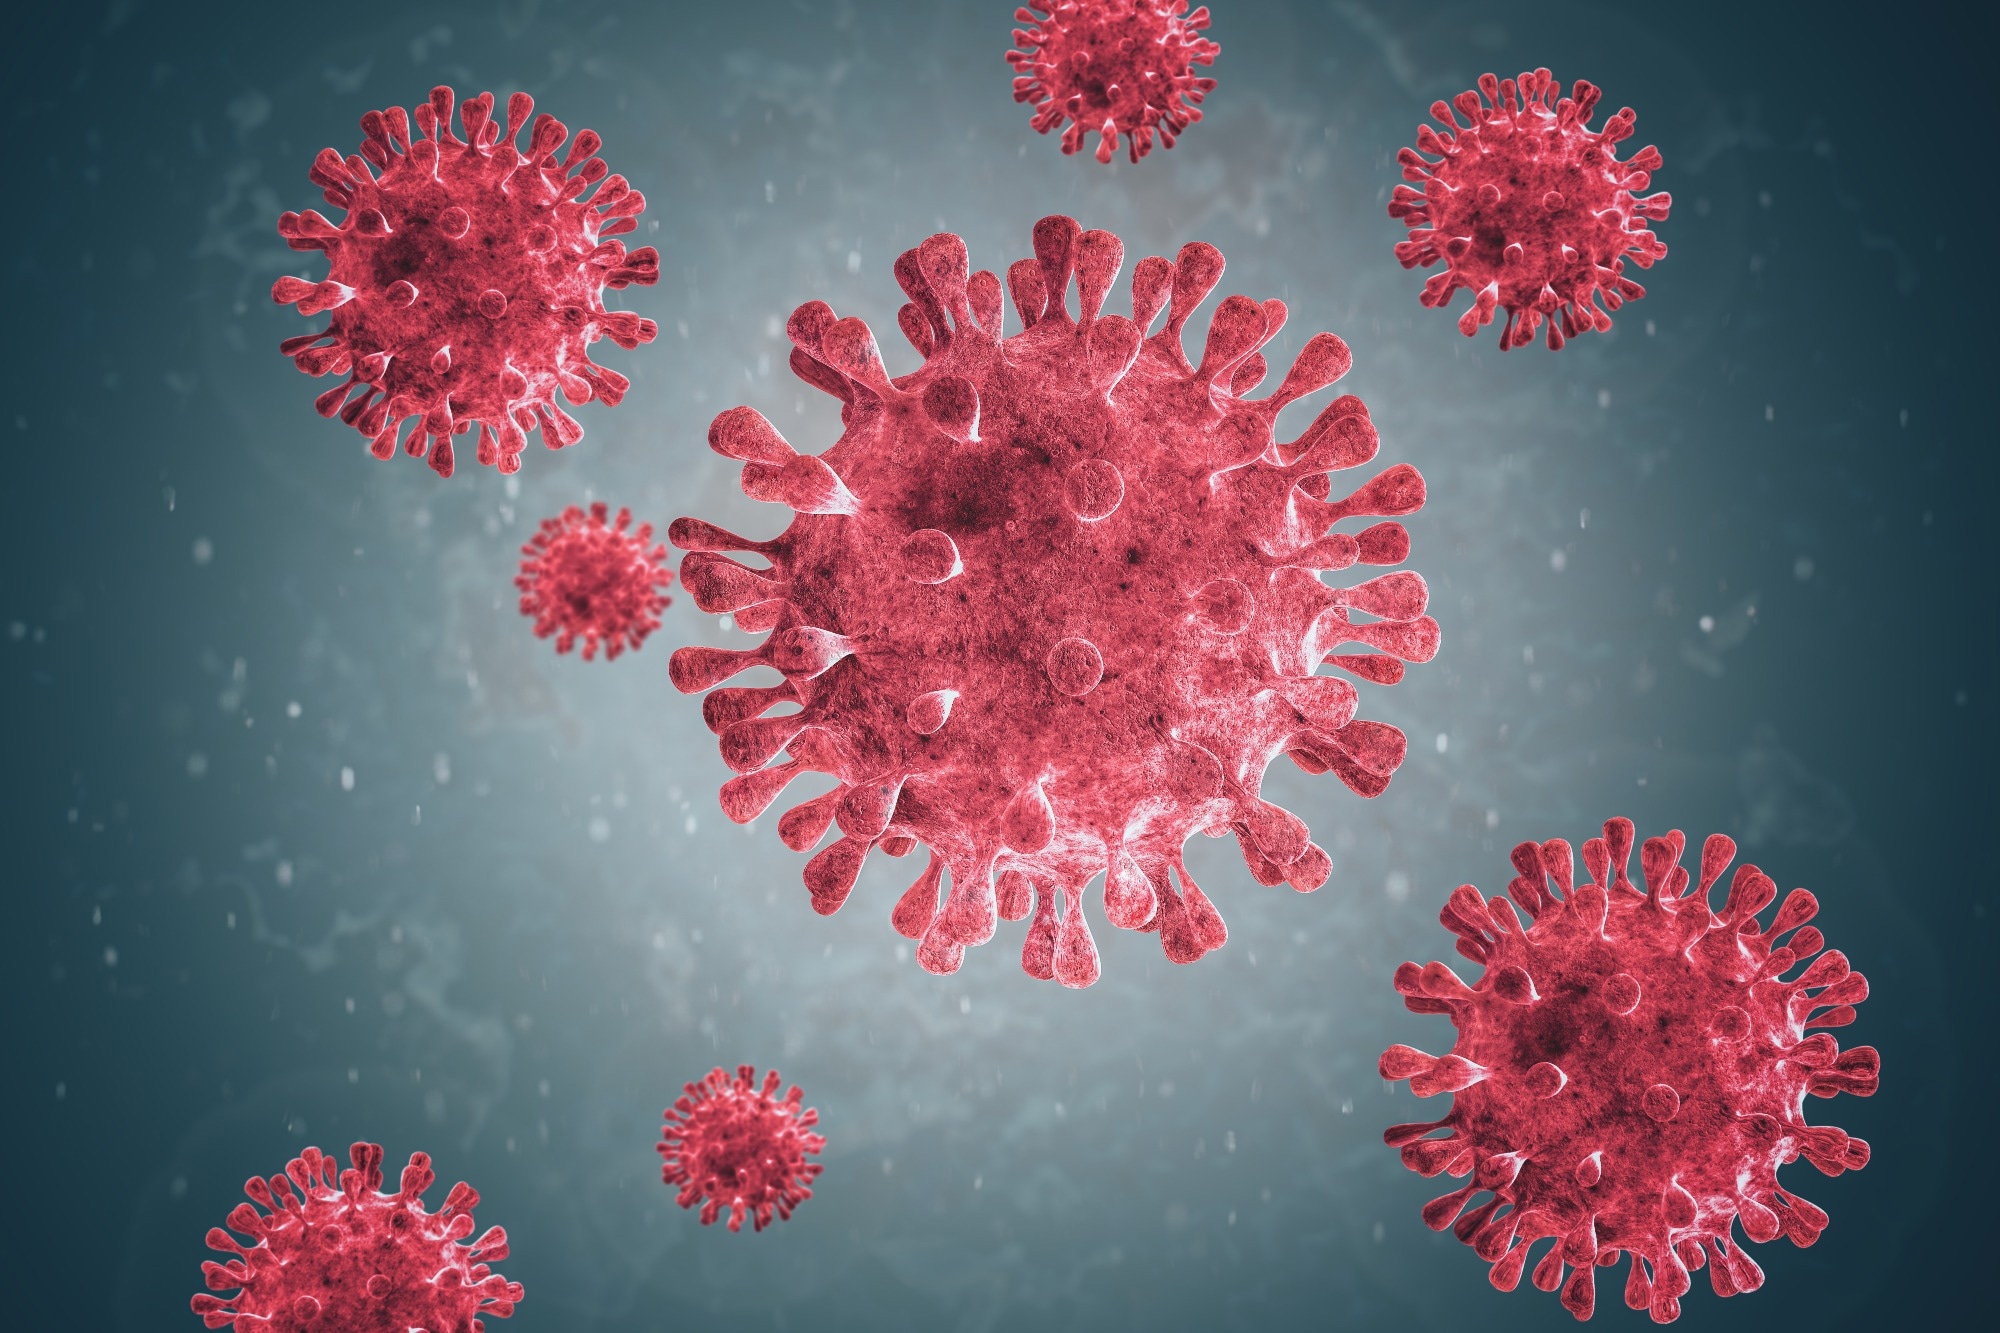 Nuevas variantes del metapneumovirus humano aumentan en España post-COVID, destacando evolución e impacto